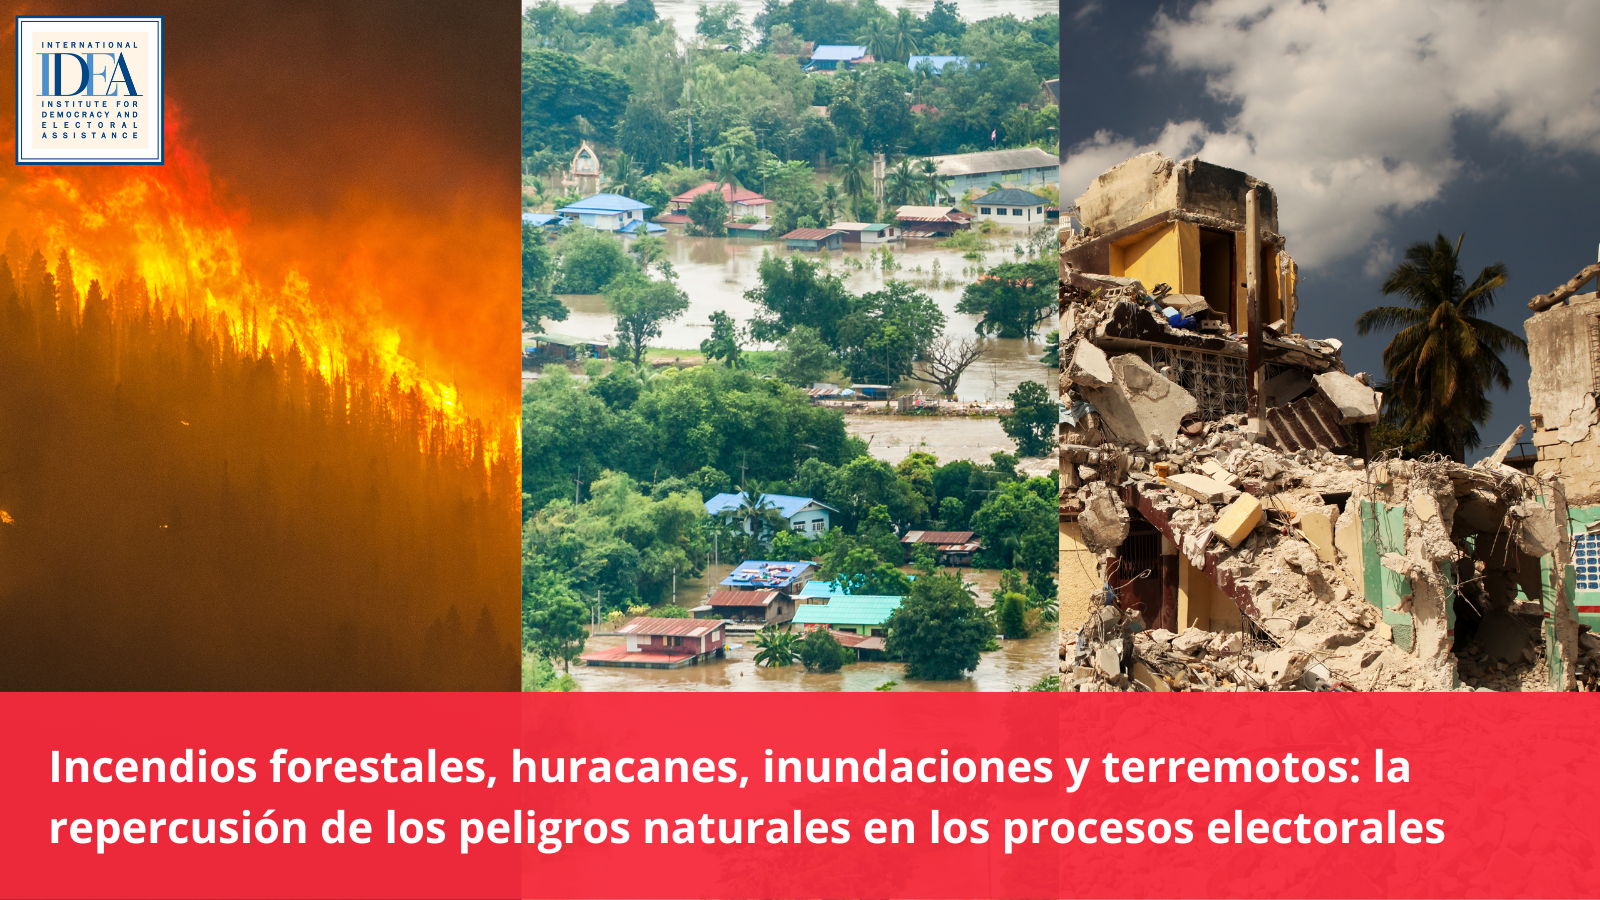 Incendios forestales, huracanes, inundaciones y terremotos: la repercusión de los peligros naturales en los procesos electorales